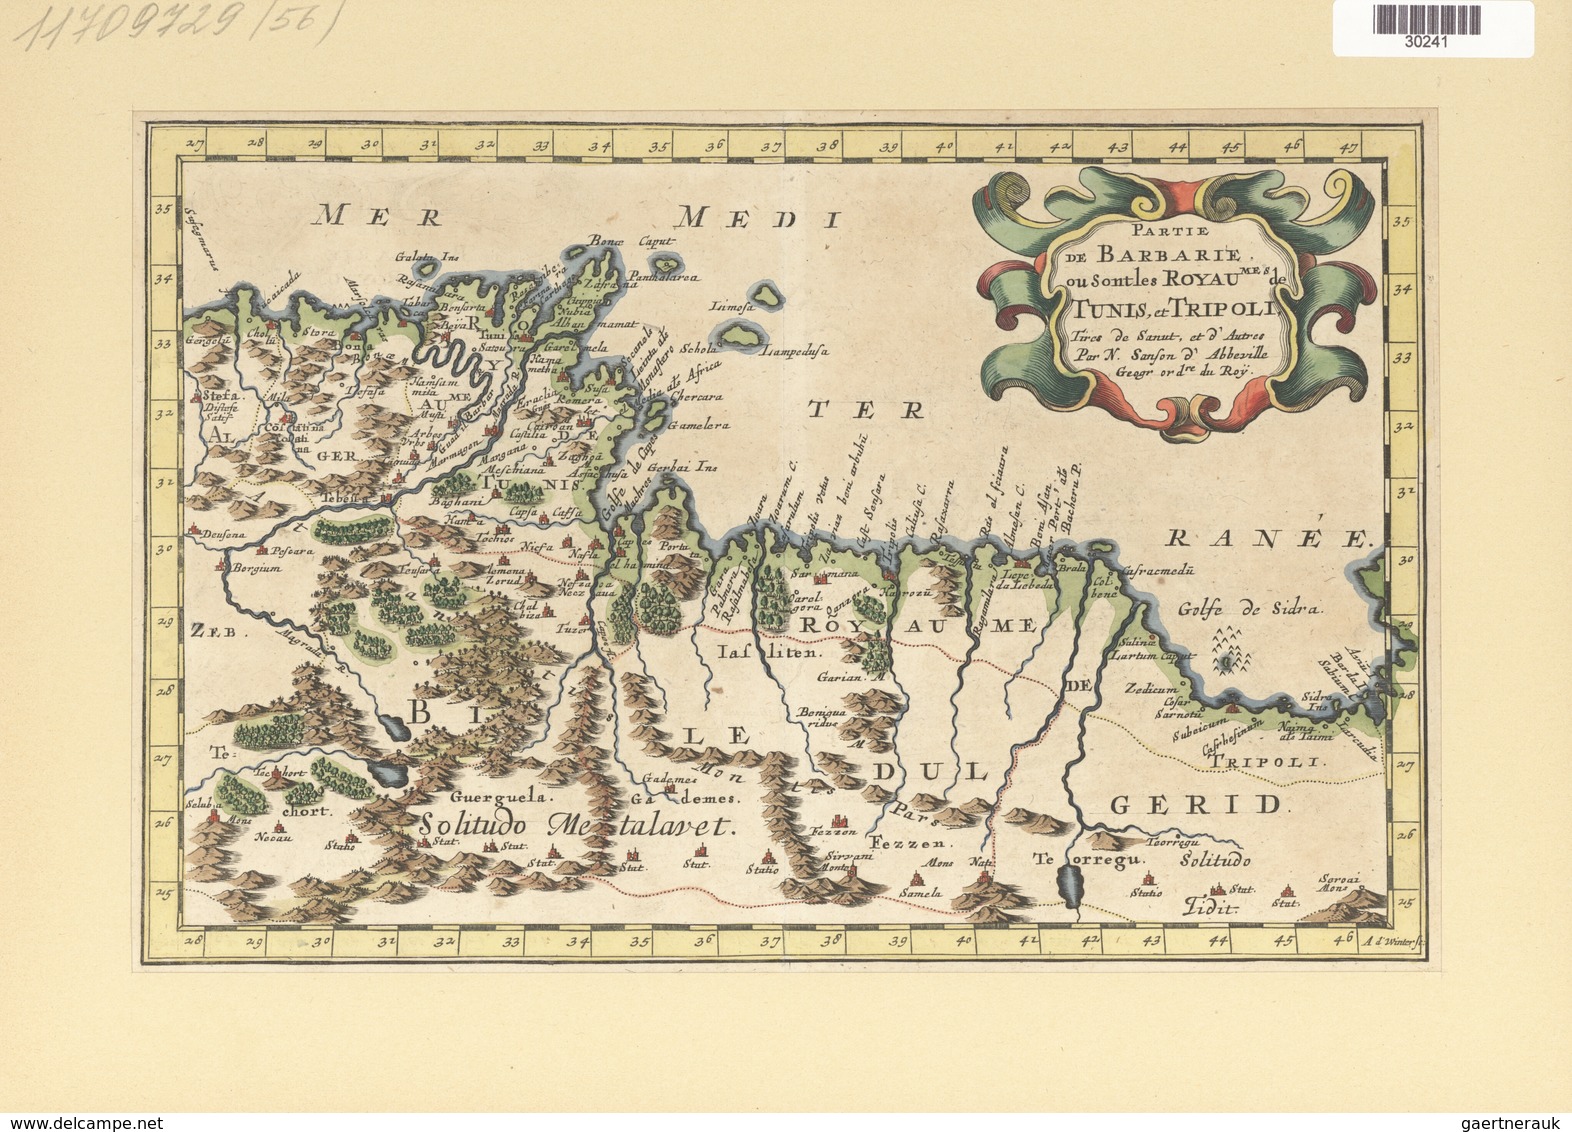 Landkarten Und Stiche: 1734. Partie De Barbarie, Ou Sont Les Royaumes De Tunis, Et Tripoli; By Nicol - Géographie